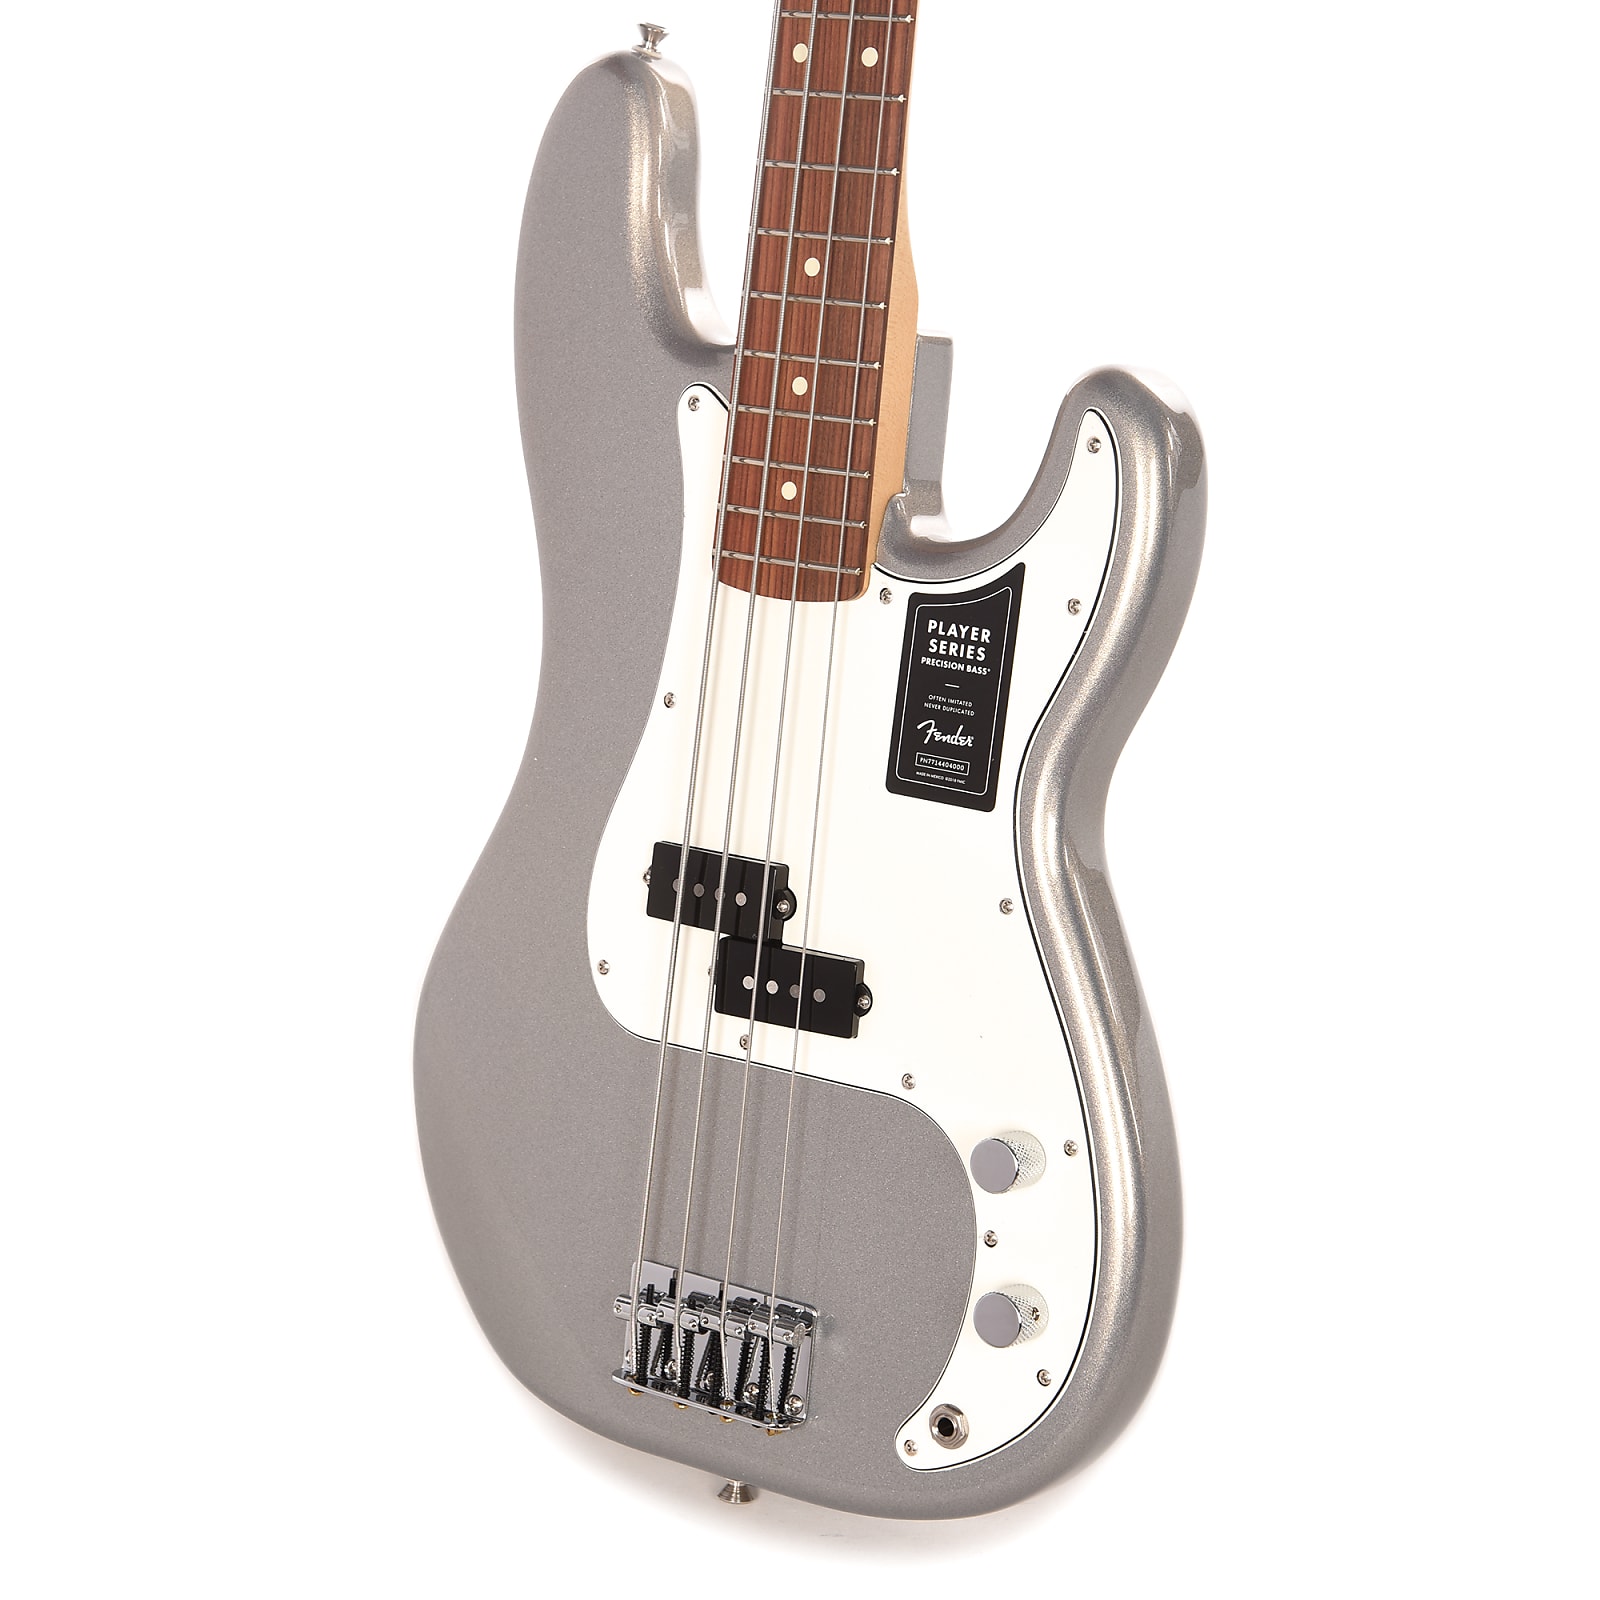 Fender Precision Bass Player Mex Pf - Silver - Bajo eléctrico de cuerpo sólido - Variation 1